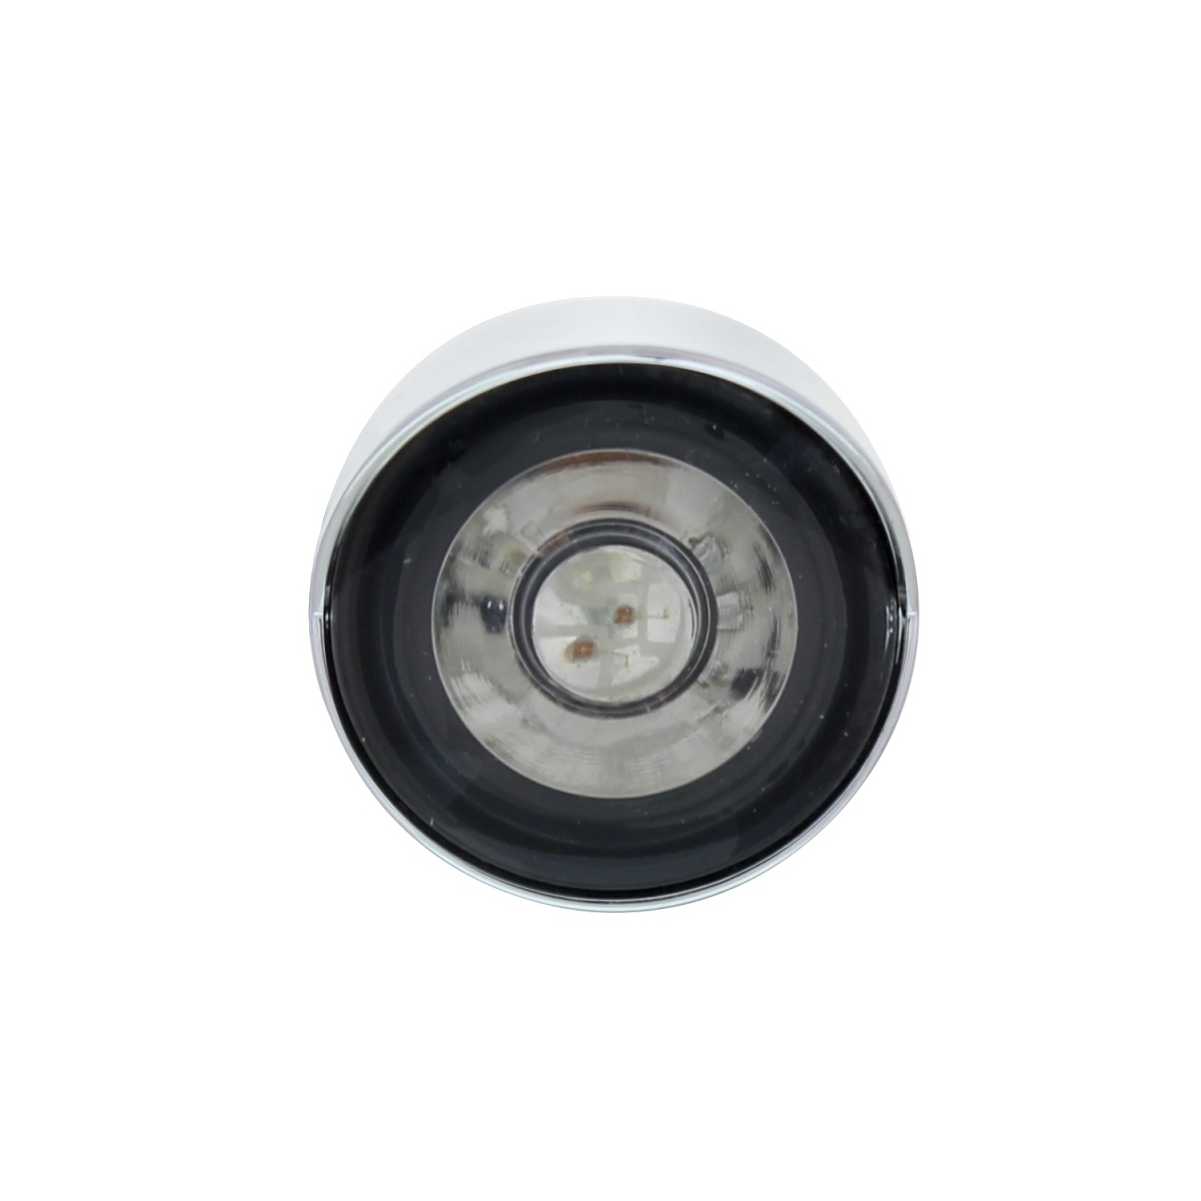 Peterbilt Air Cleaner Bracket w/ Mini Lights & Visors - Amber LED/Clear Lens